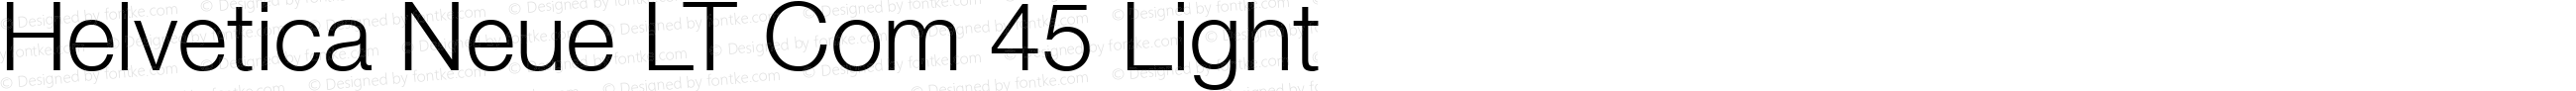 Helvetica Neue LT Com 45 Light